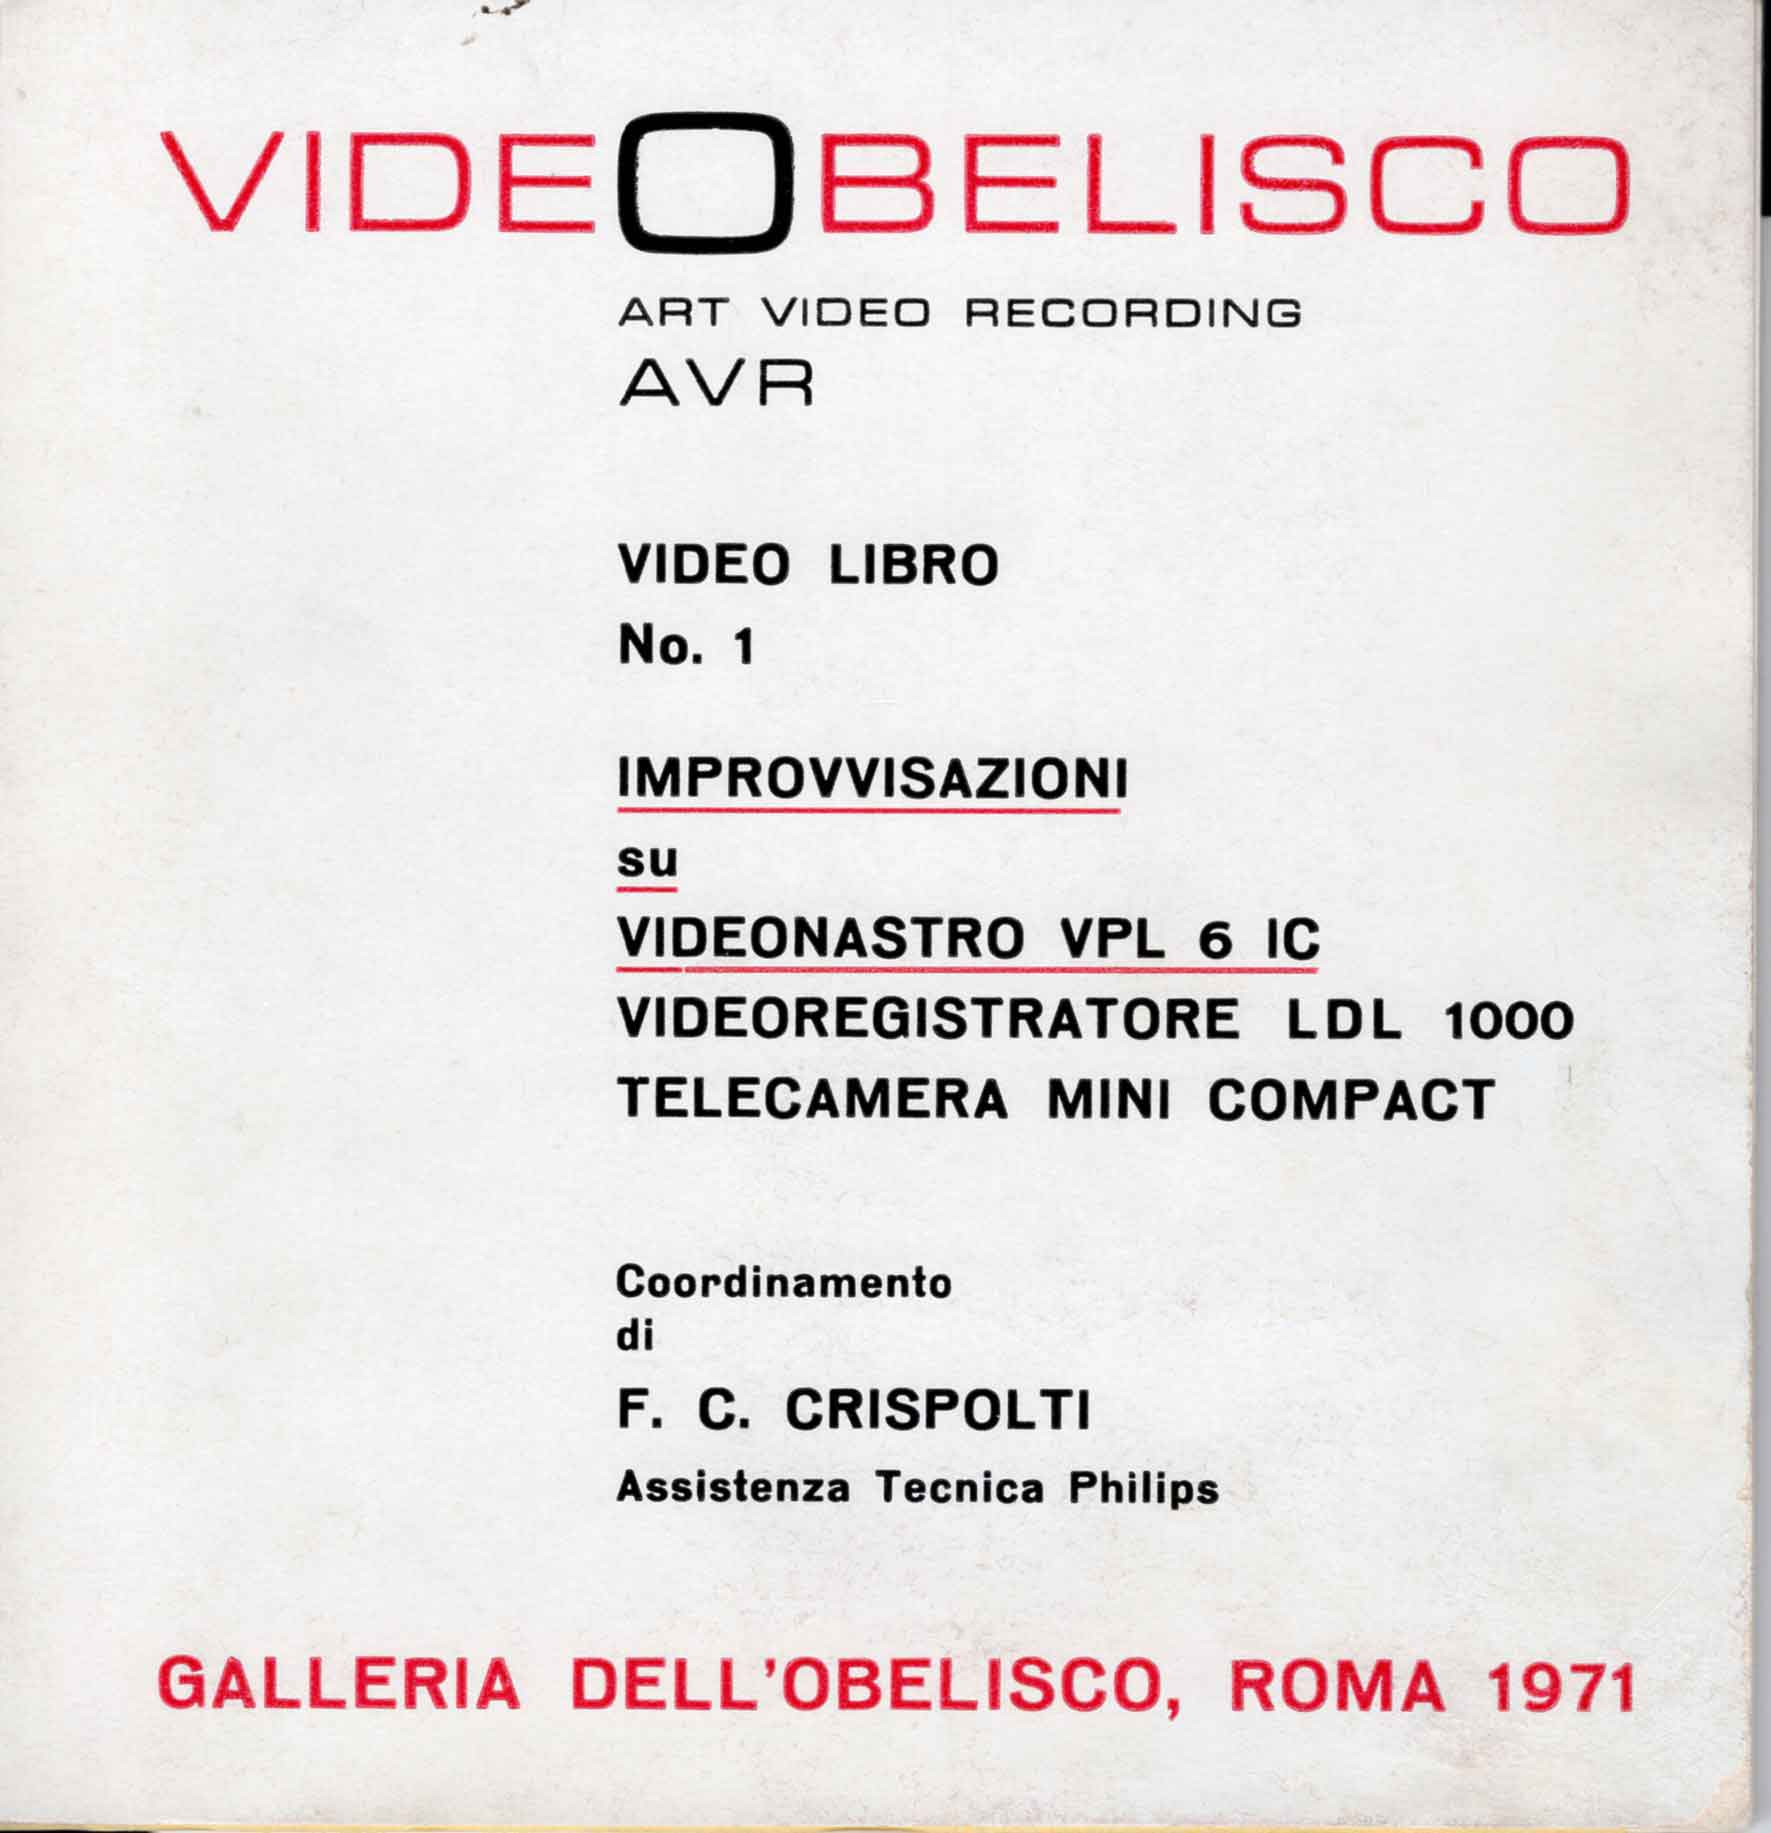 Copertina del Catalogo «VideObelisco Art Video Recording AVR Video Libro No. 1, Improvvisazioni su Videonsatro VPL 6 IC, videoregistratore LDL 1000, telecamera mini-compact», Galleria dell’Obelisco, Roma 1971.